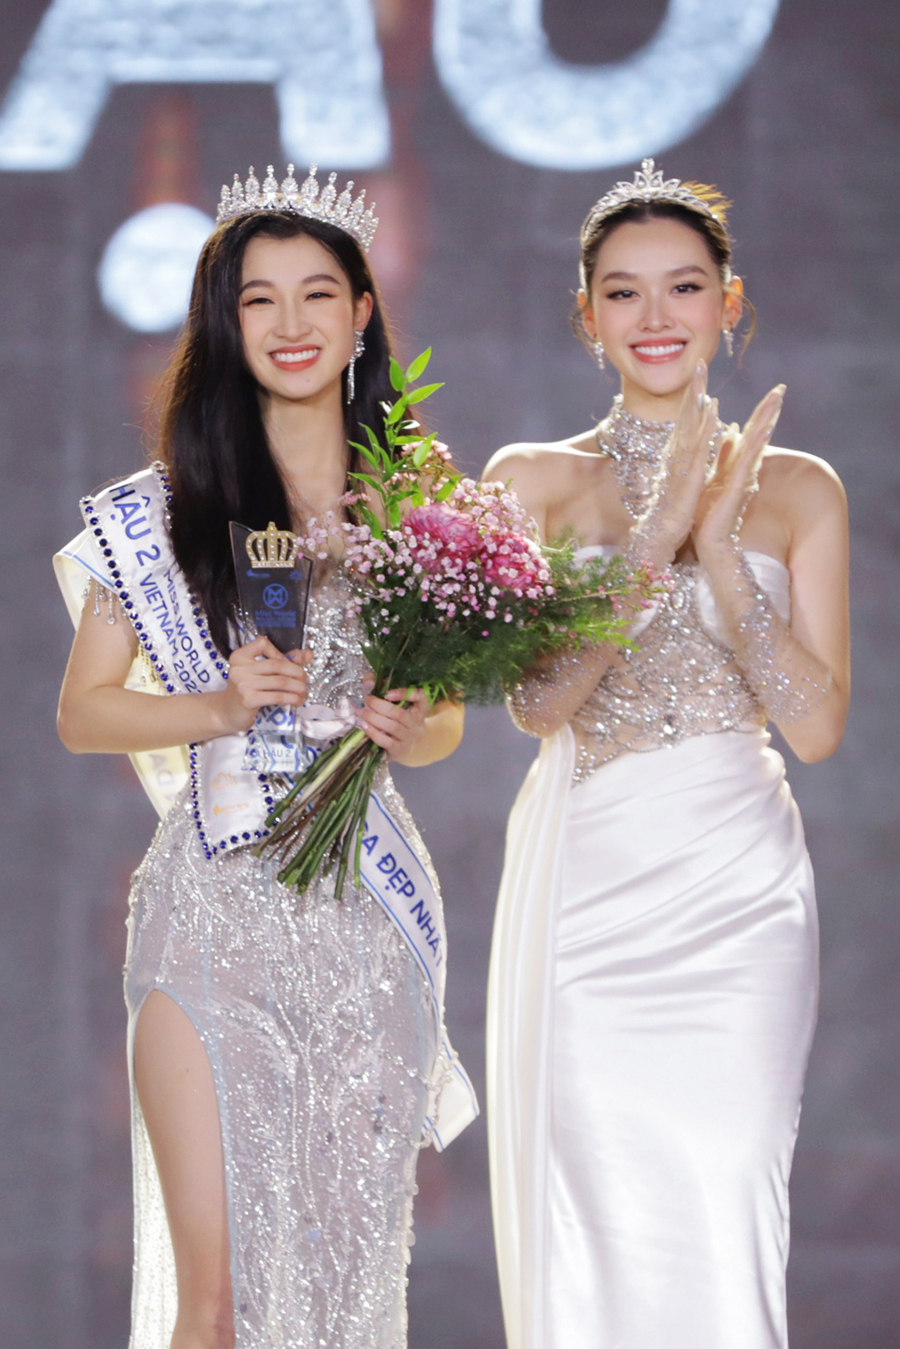 Á hậu 2 Miss World Vietnam 2022 gây ấn tượng bởi đôi mắt biết cười, nụ cười tươi tắn và đặc biệt nhiều người đồn đoán, mặt mộc của cô nàng cũng vô cùng hoàn hảo, không chút tì vết.